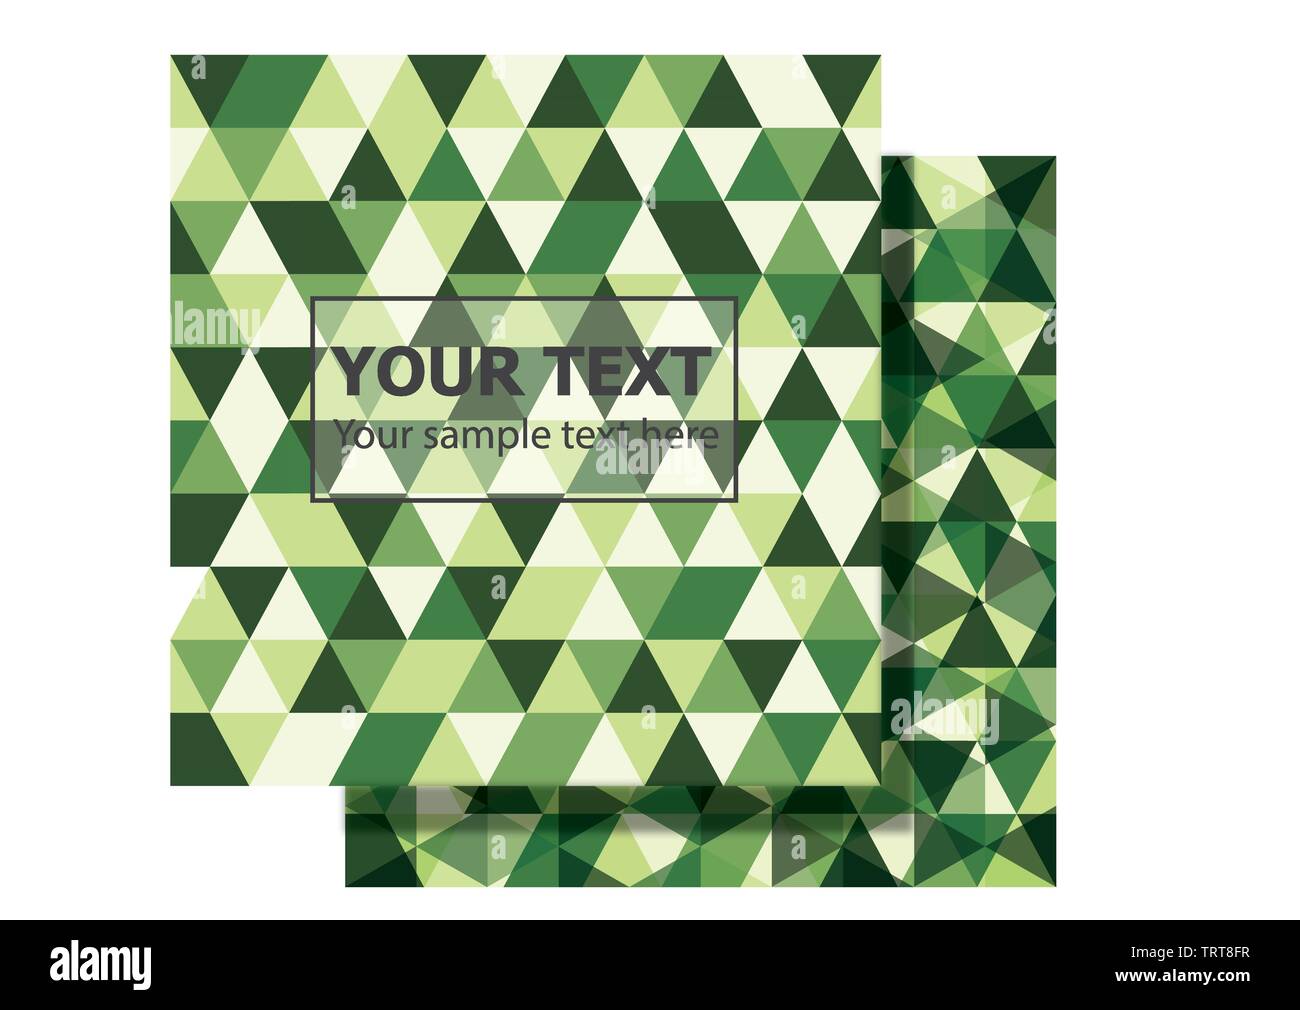 2 Satz von Green camouflage polygonalen Vektorgrafik Hintergrund Design mit Kopie Platz für Ihren Text und Logo. geometrische Dreiecksform Muster Stock Vektor